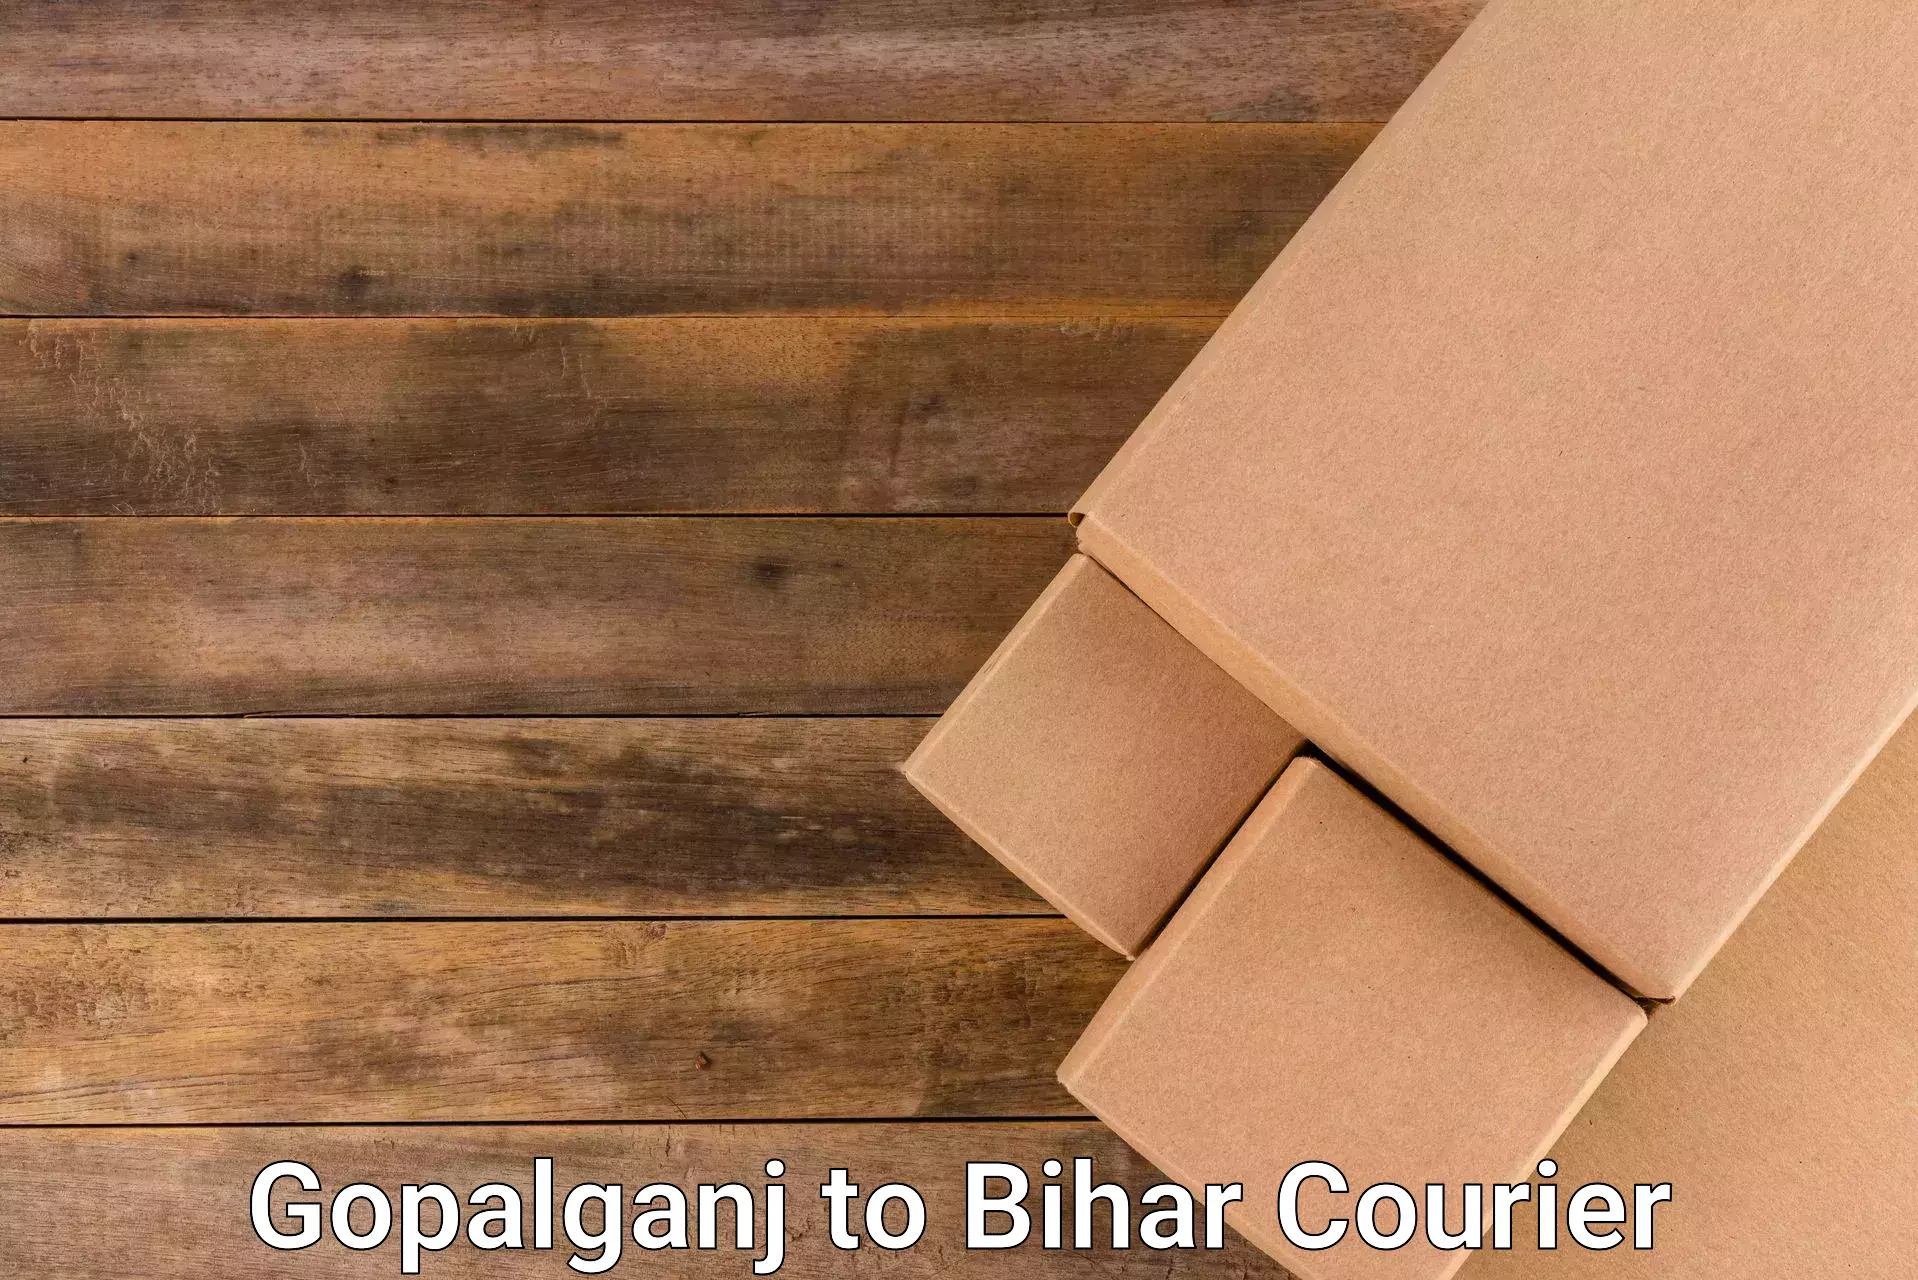 Discounted shipping Gopalganj to Bihar